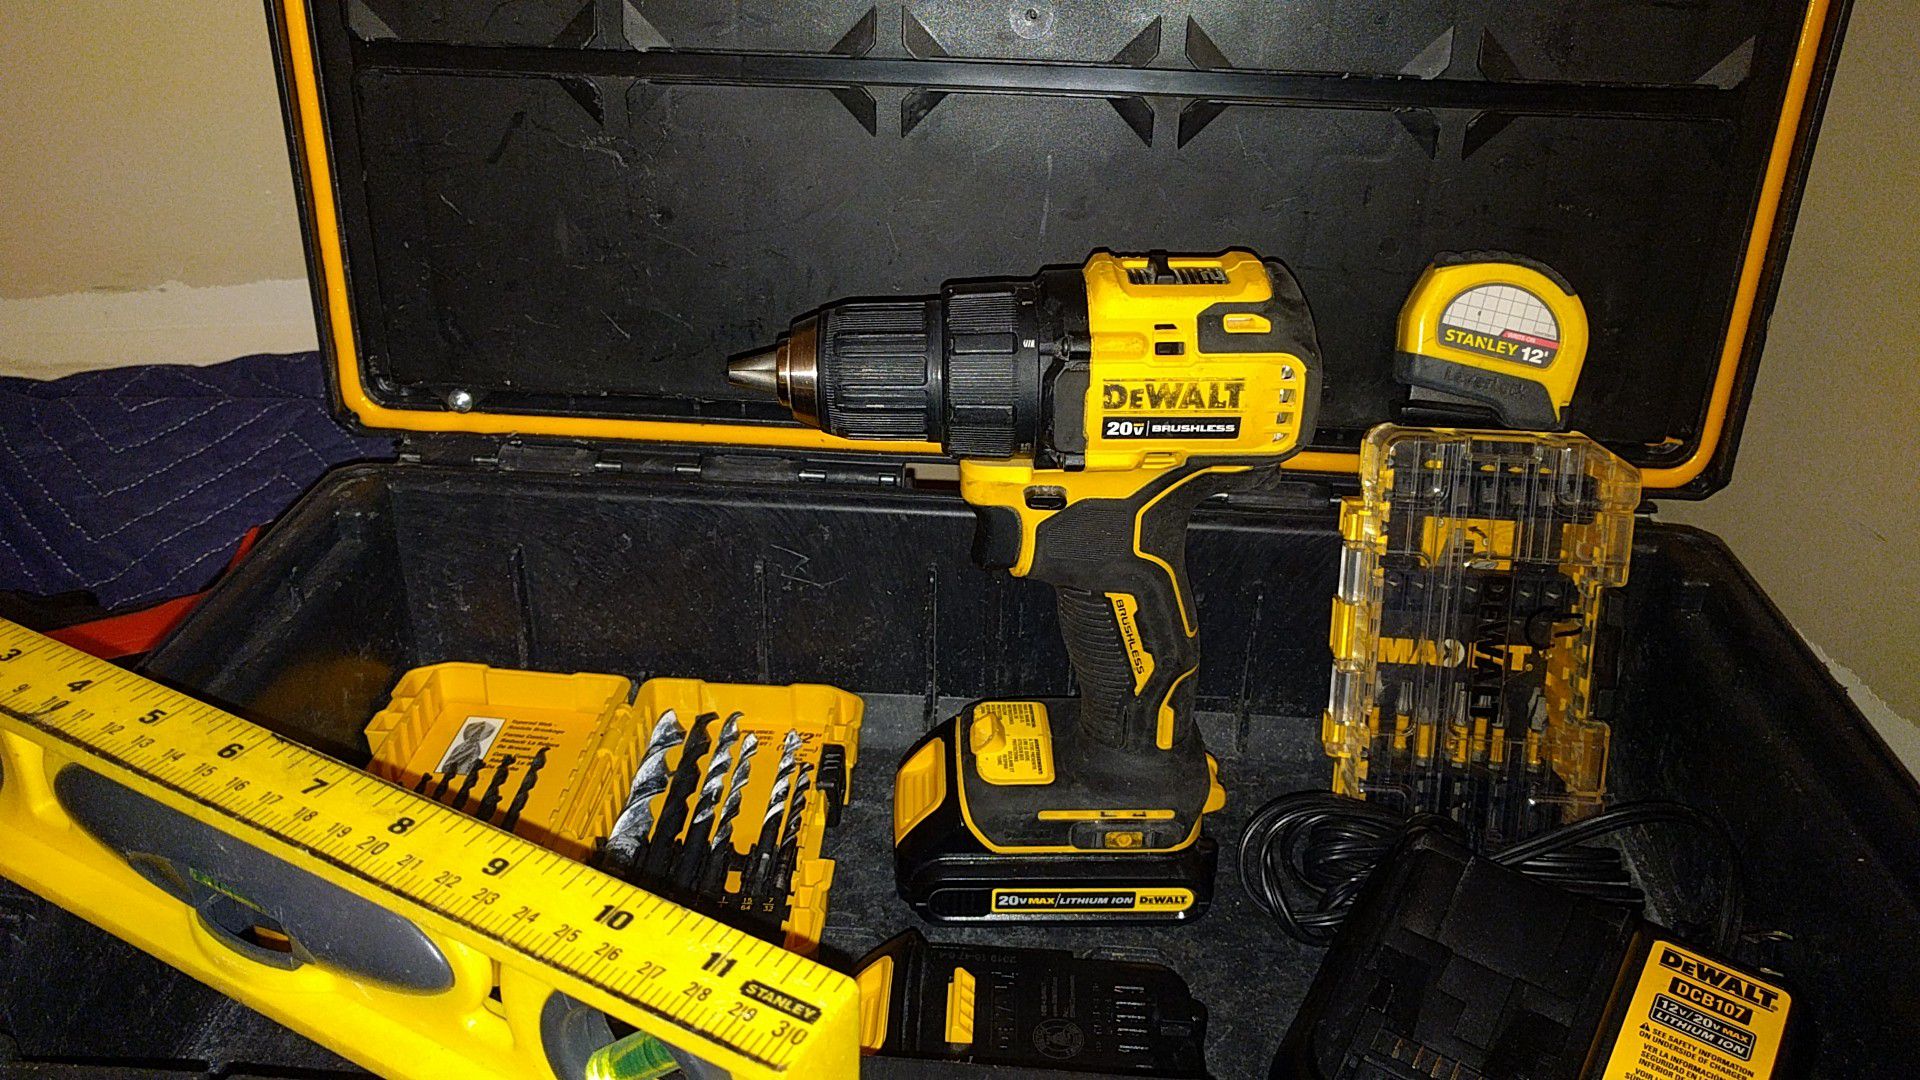 DeWalt drill and accessories plus tool box